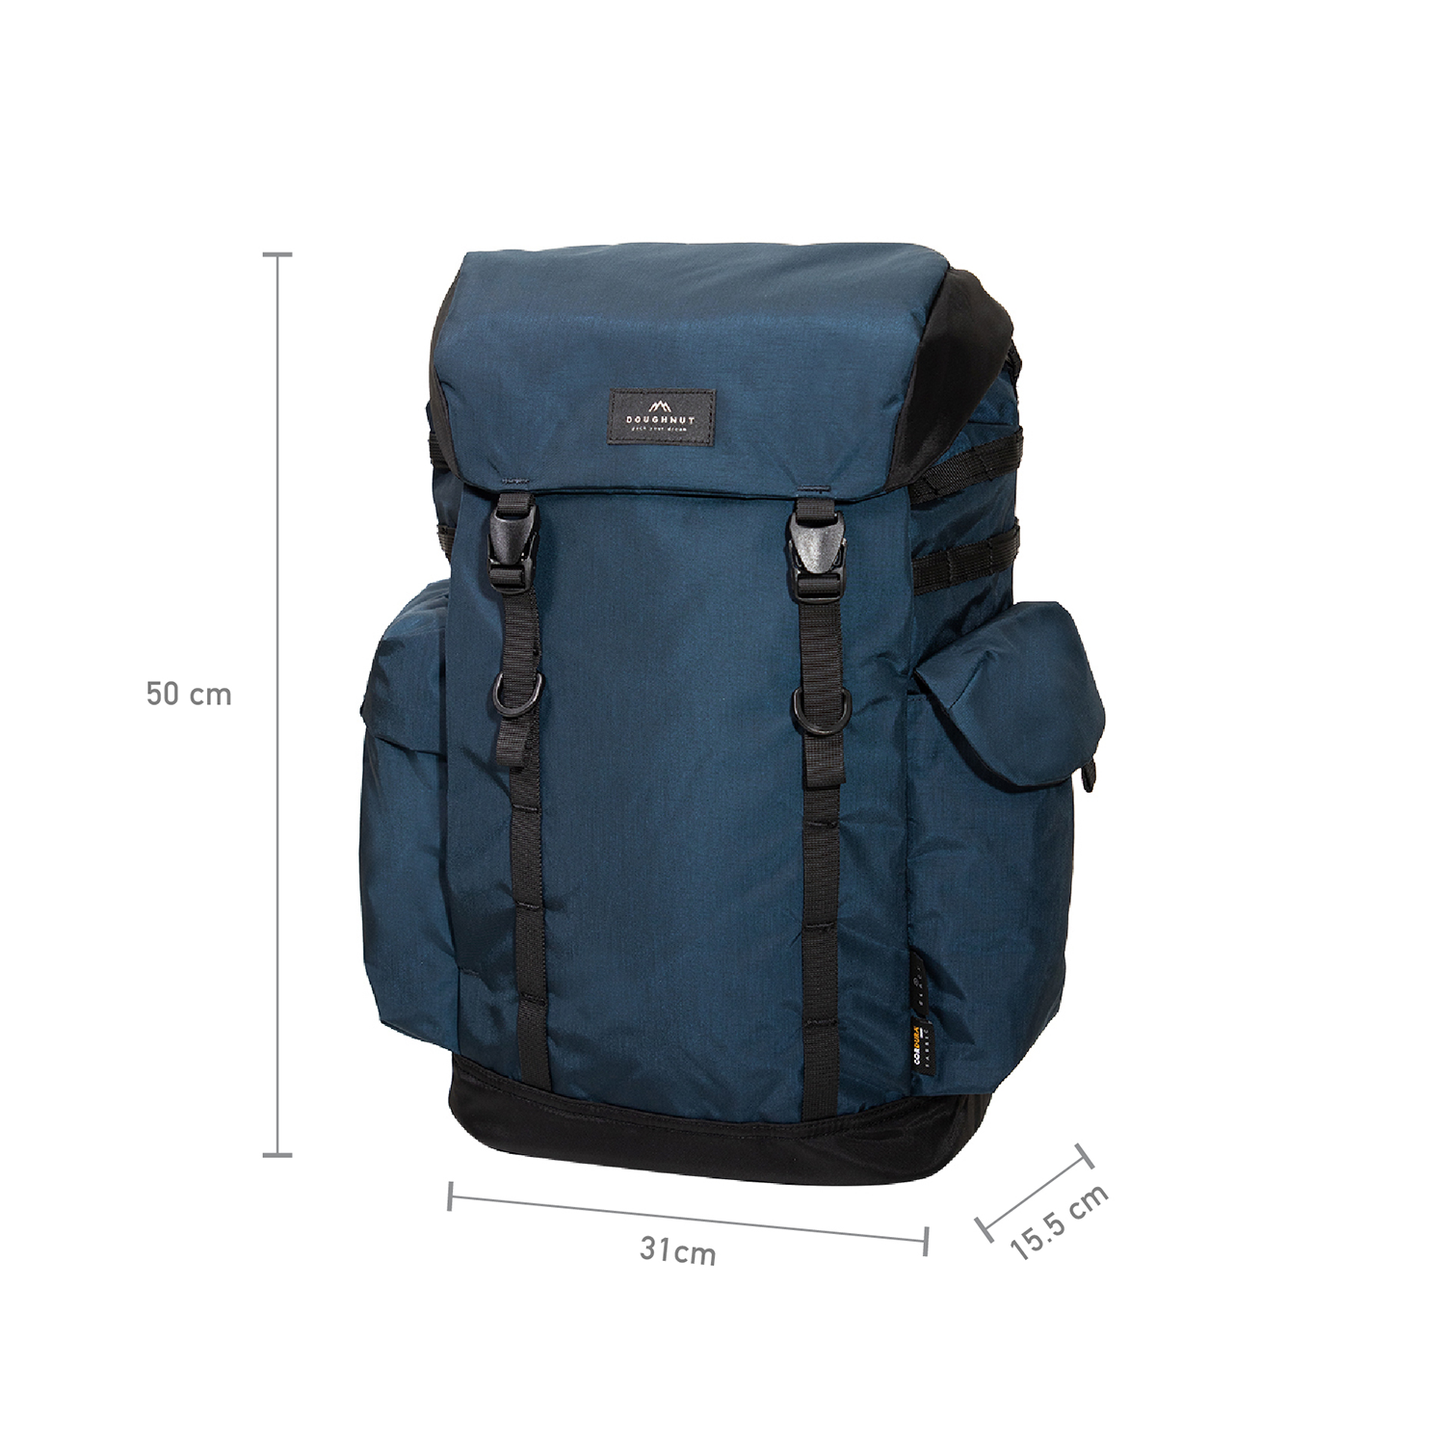 Absorb Ocean Power Series Backpack